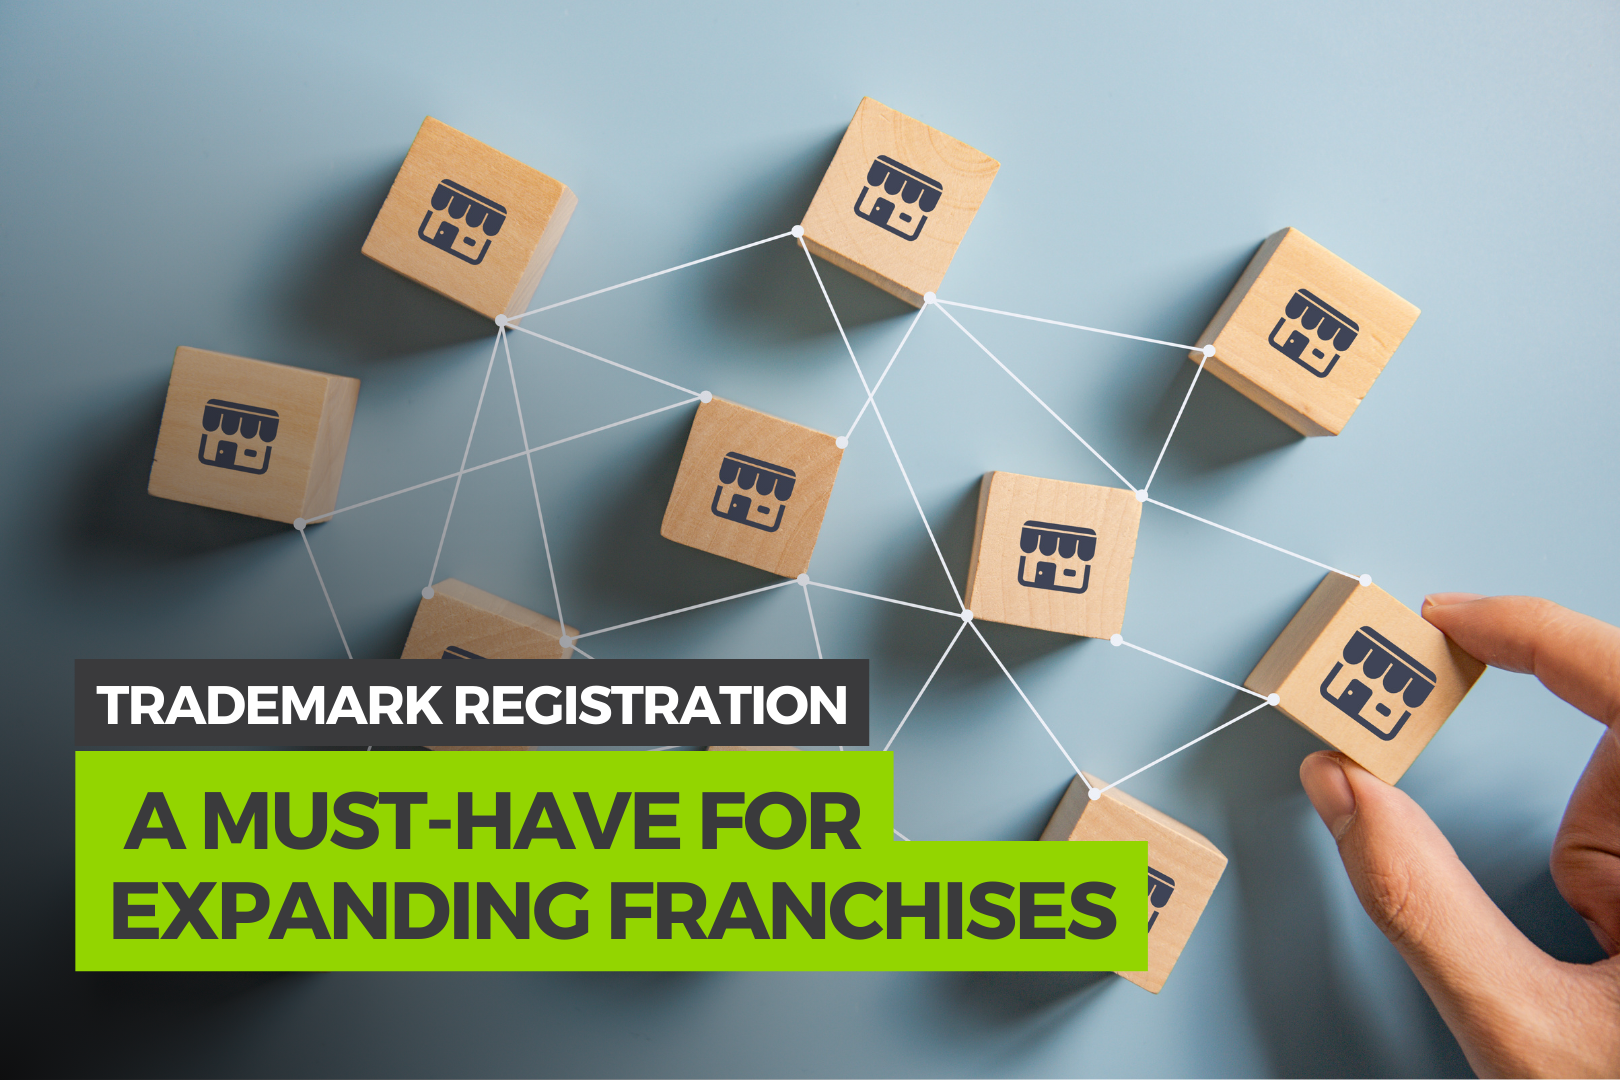 Trademark Registration before Expanding Franchises